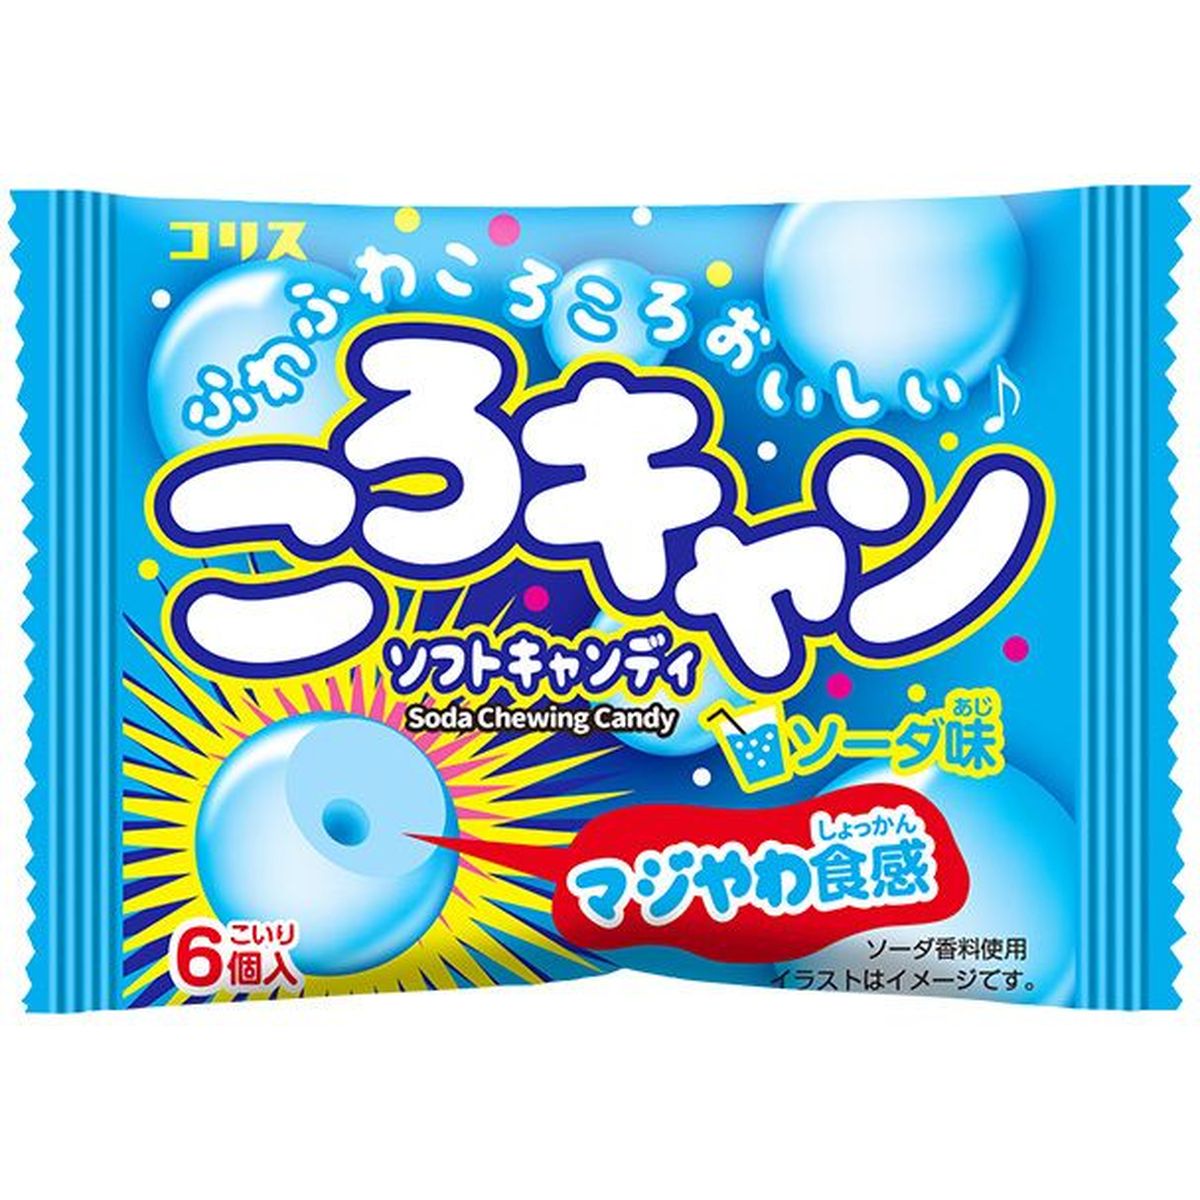 【20個入リ】コリスコロキャンソーダ味ソフトキャンディ 15g